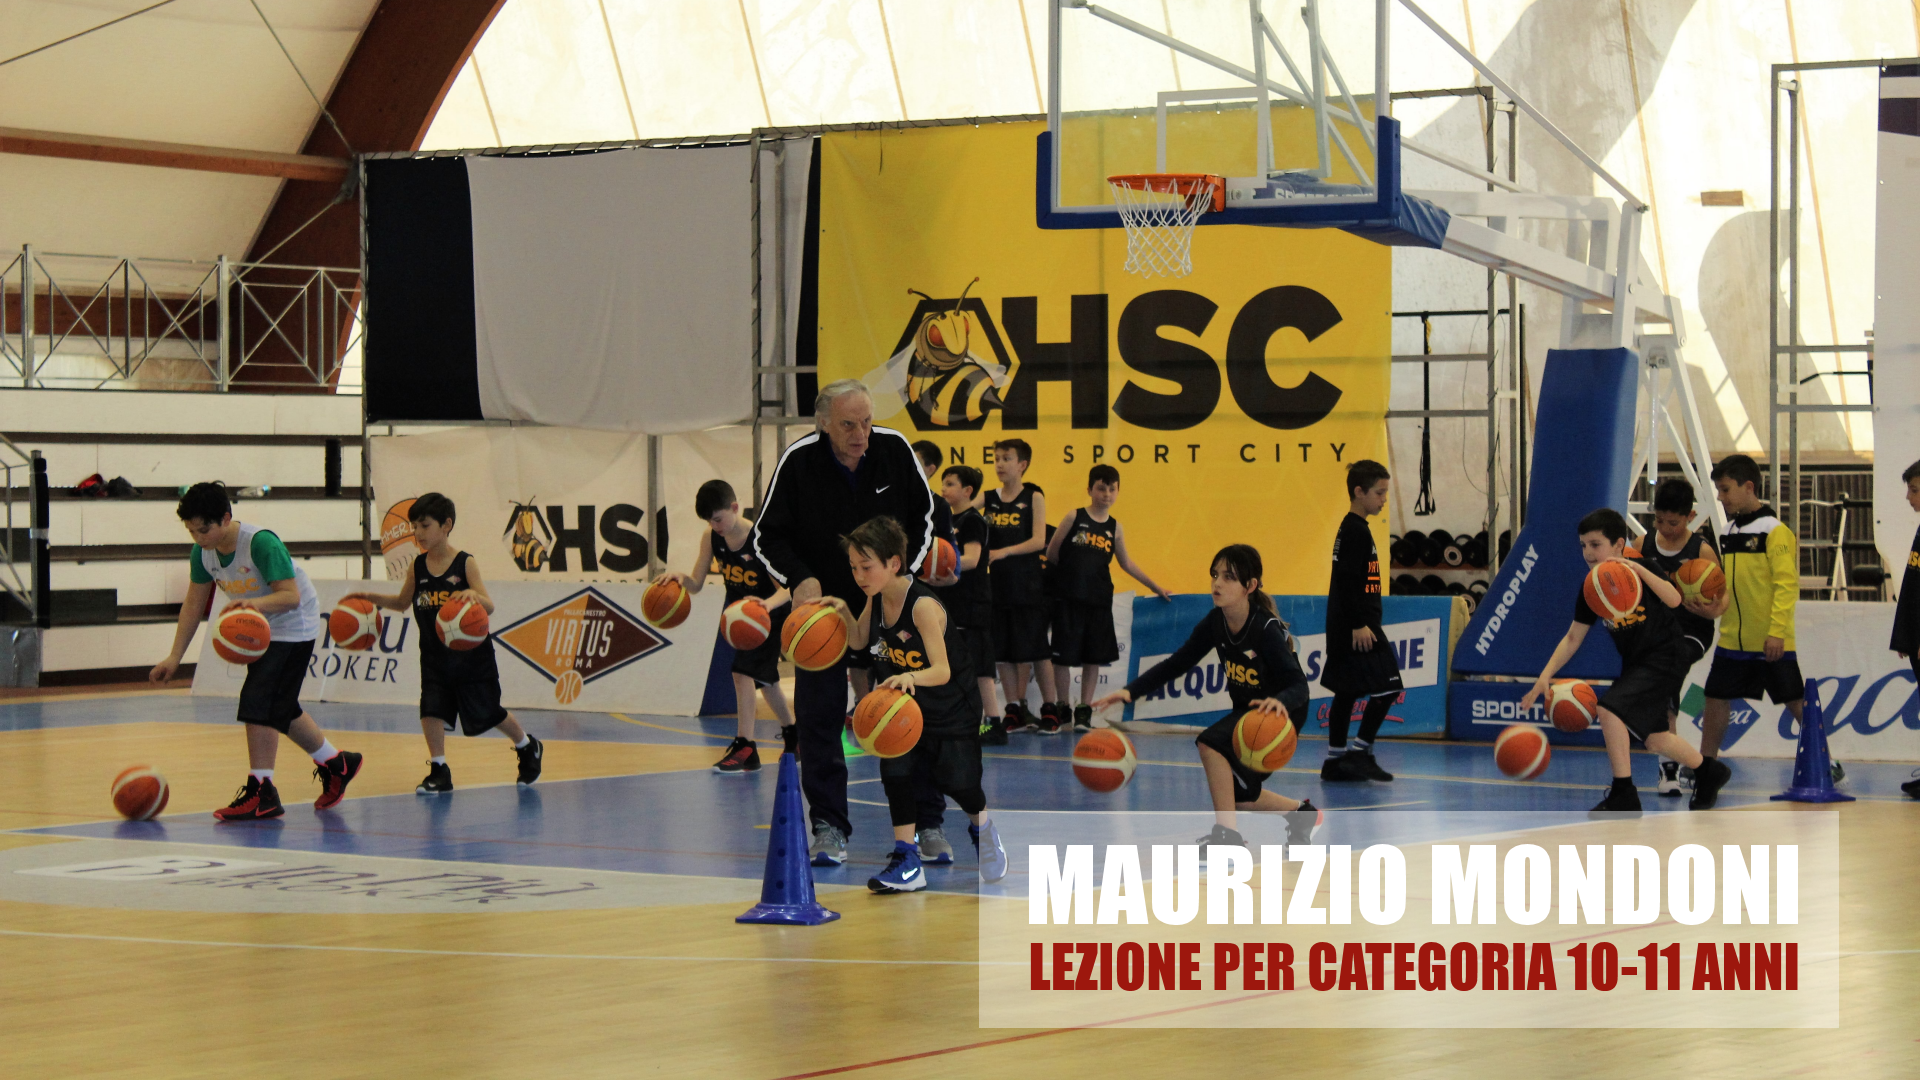 <p>Maurizio Mondoni - Lezione minibasket per la categoria 10-11 anni</p>
